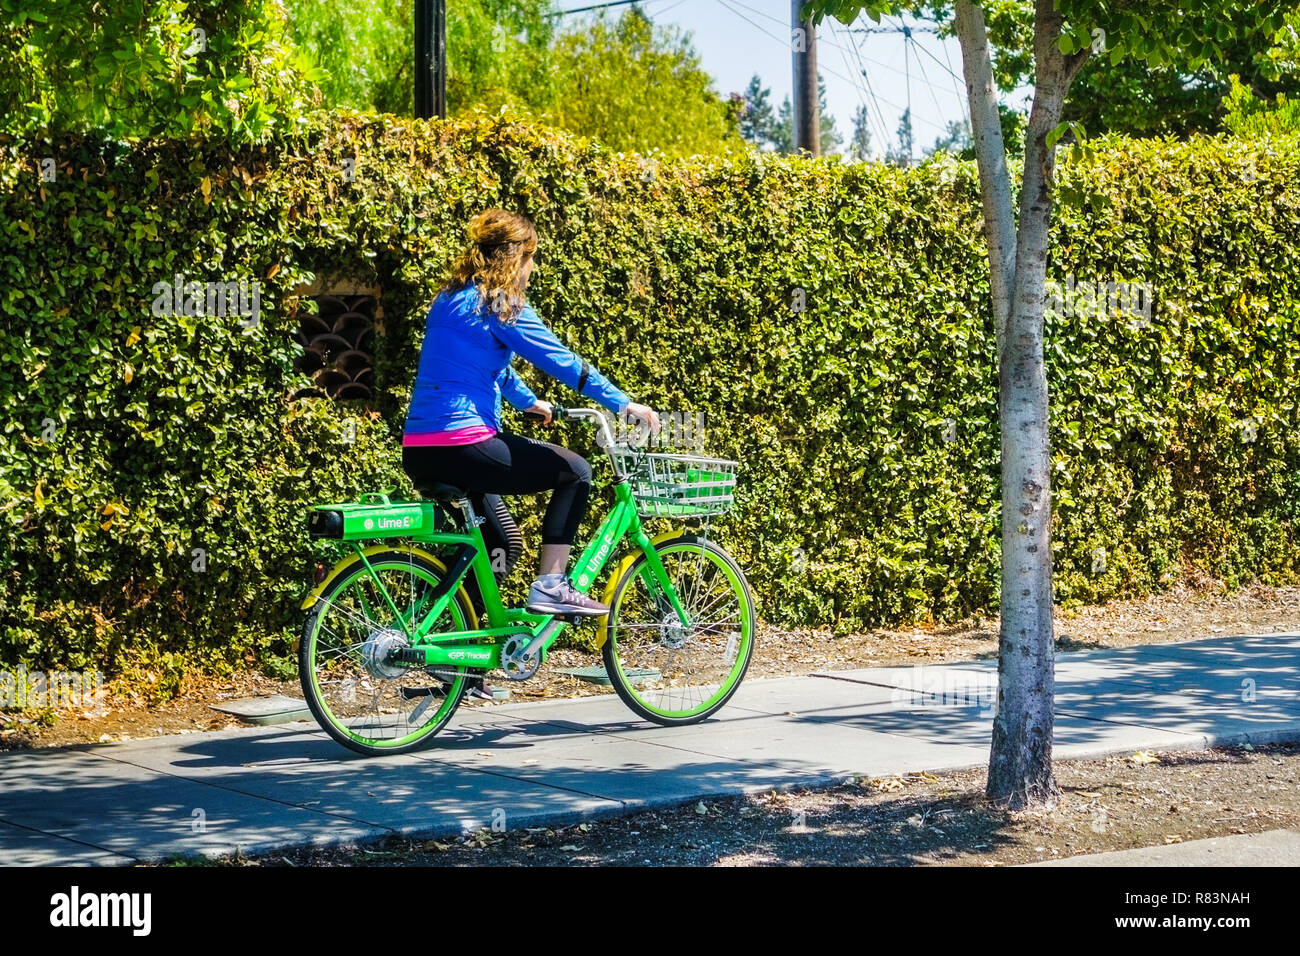 August 26, 2018 Mountain View/CA/USA - Mädchen reiten ein Kalk Fahrrad auf einem Bürgersteig in Silicon Valley; Kalk ist eine US-amerikanische Transport firma Stockfoto